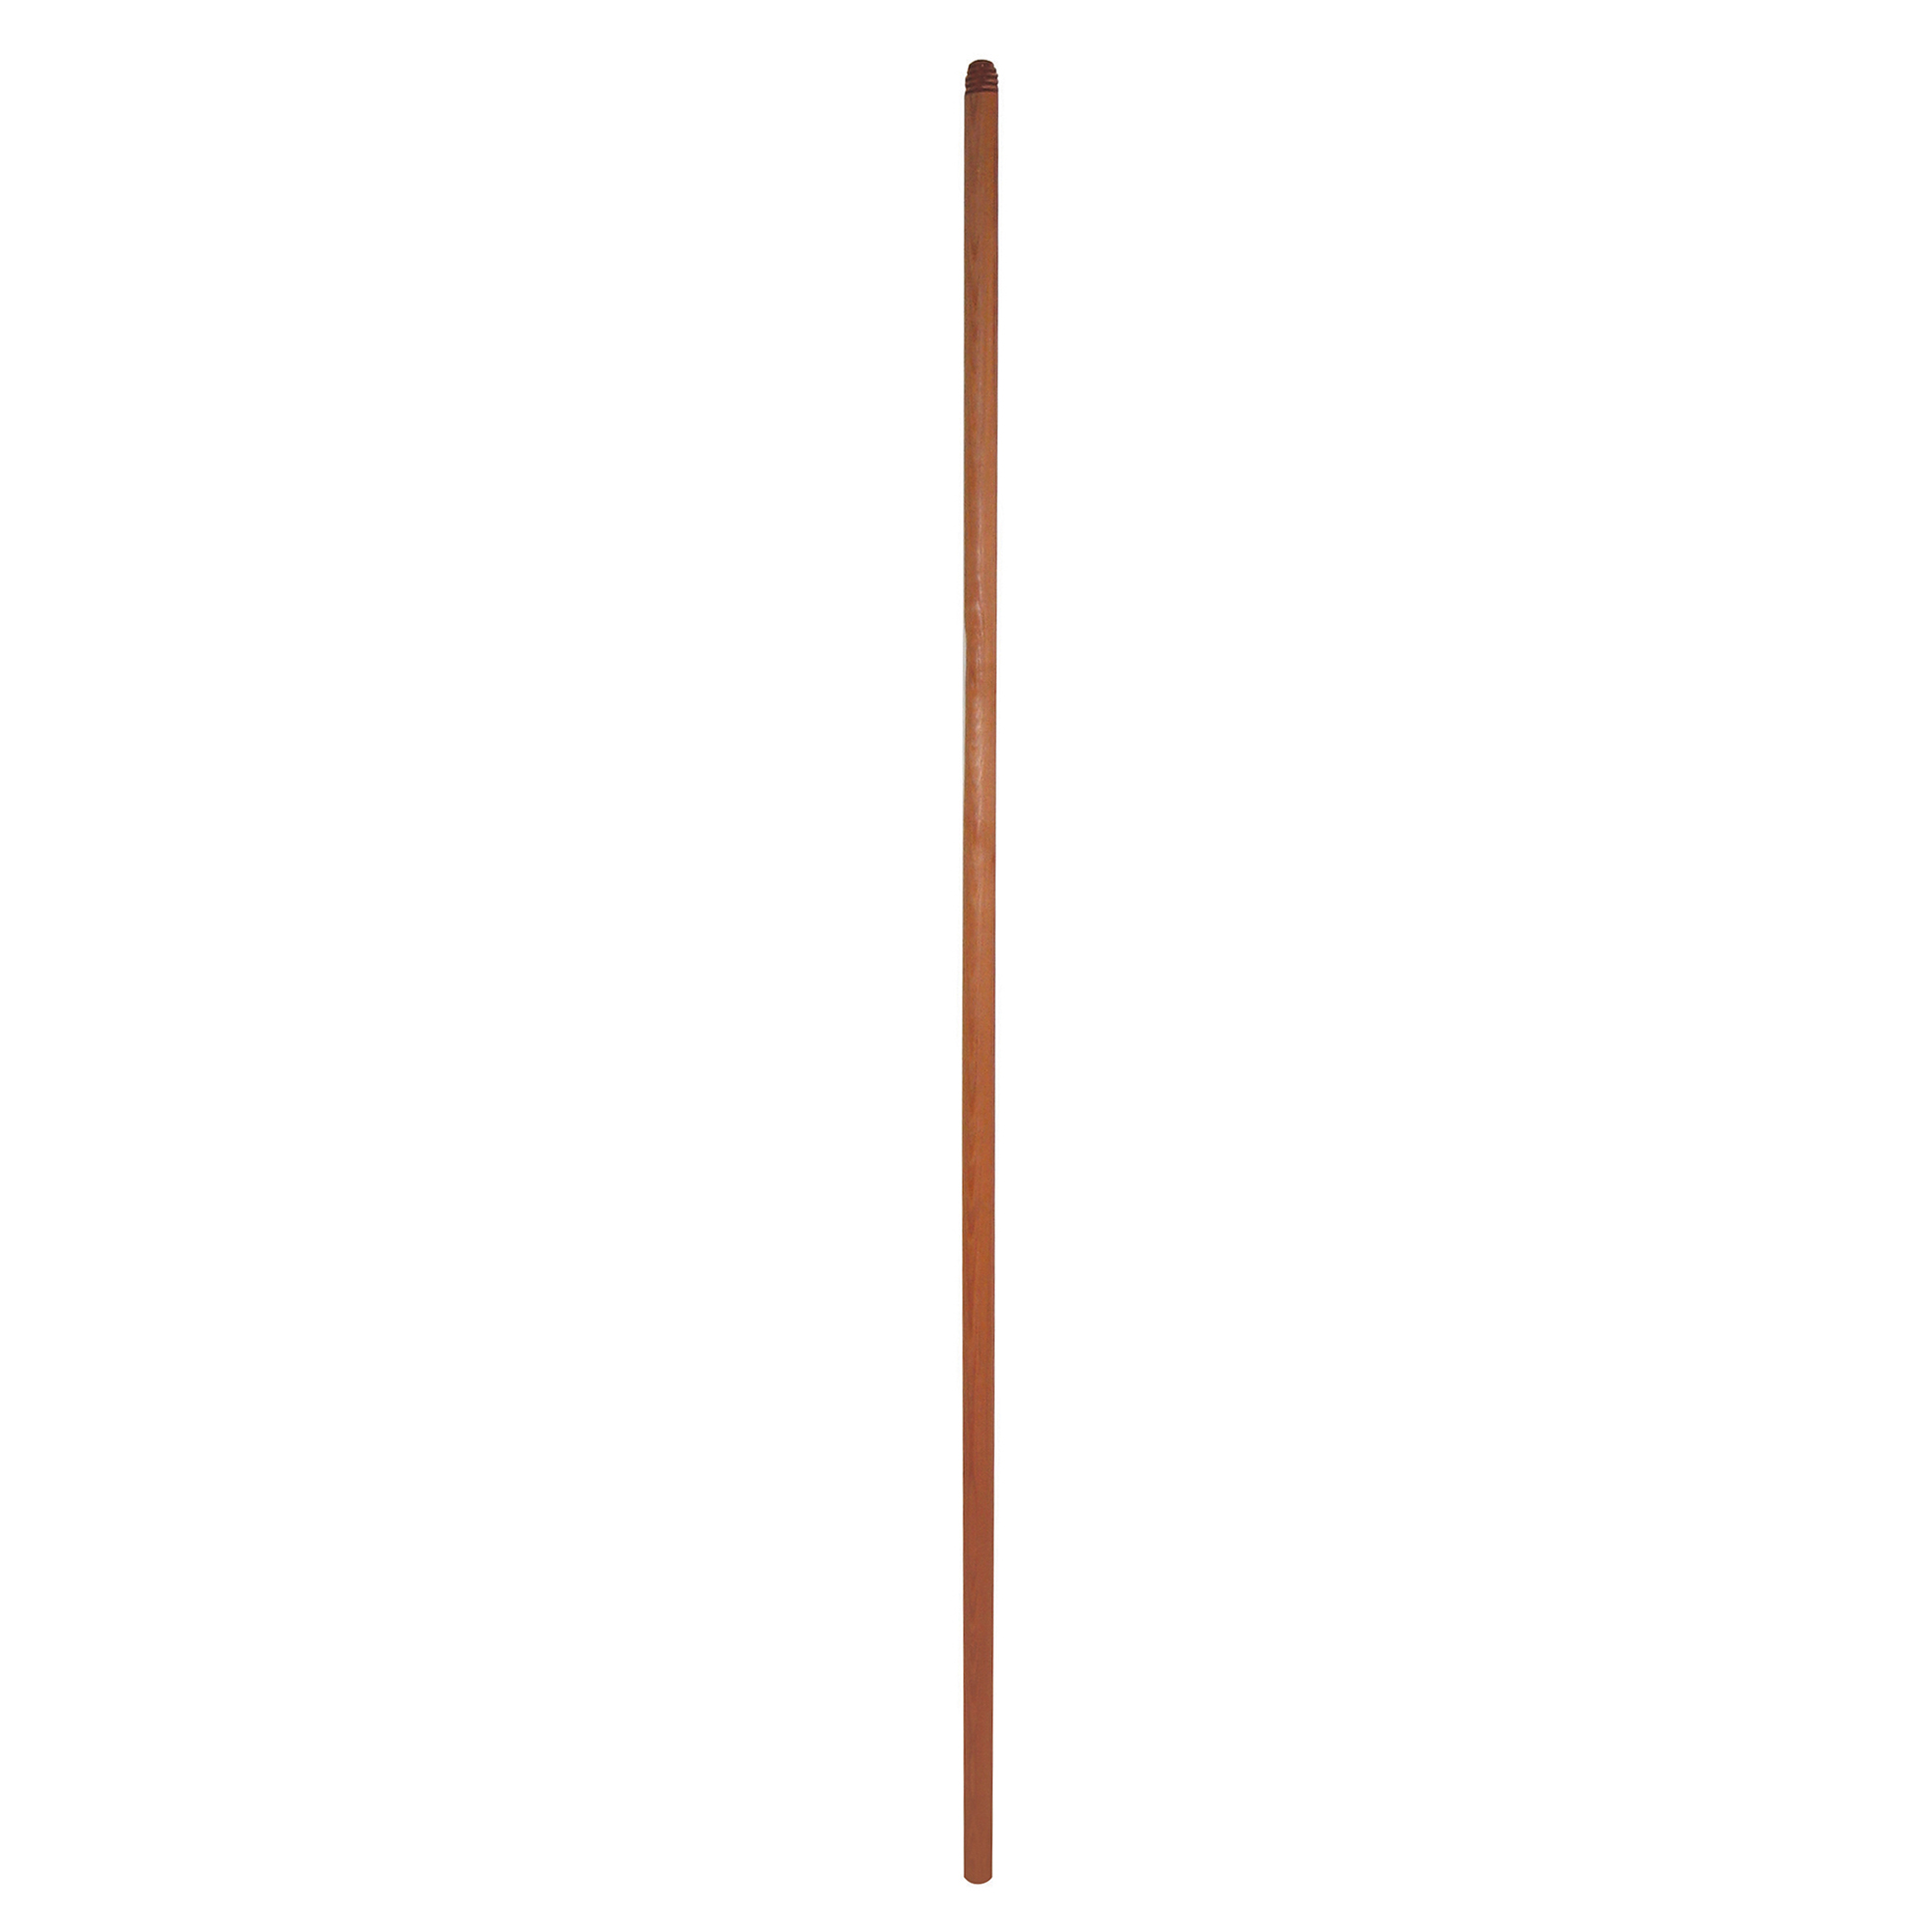 Manico 130cm in legno colore larice